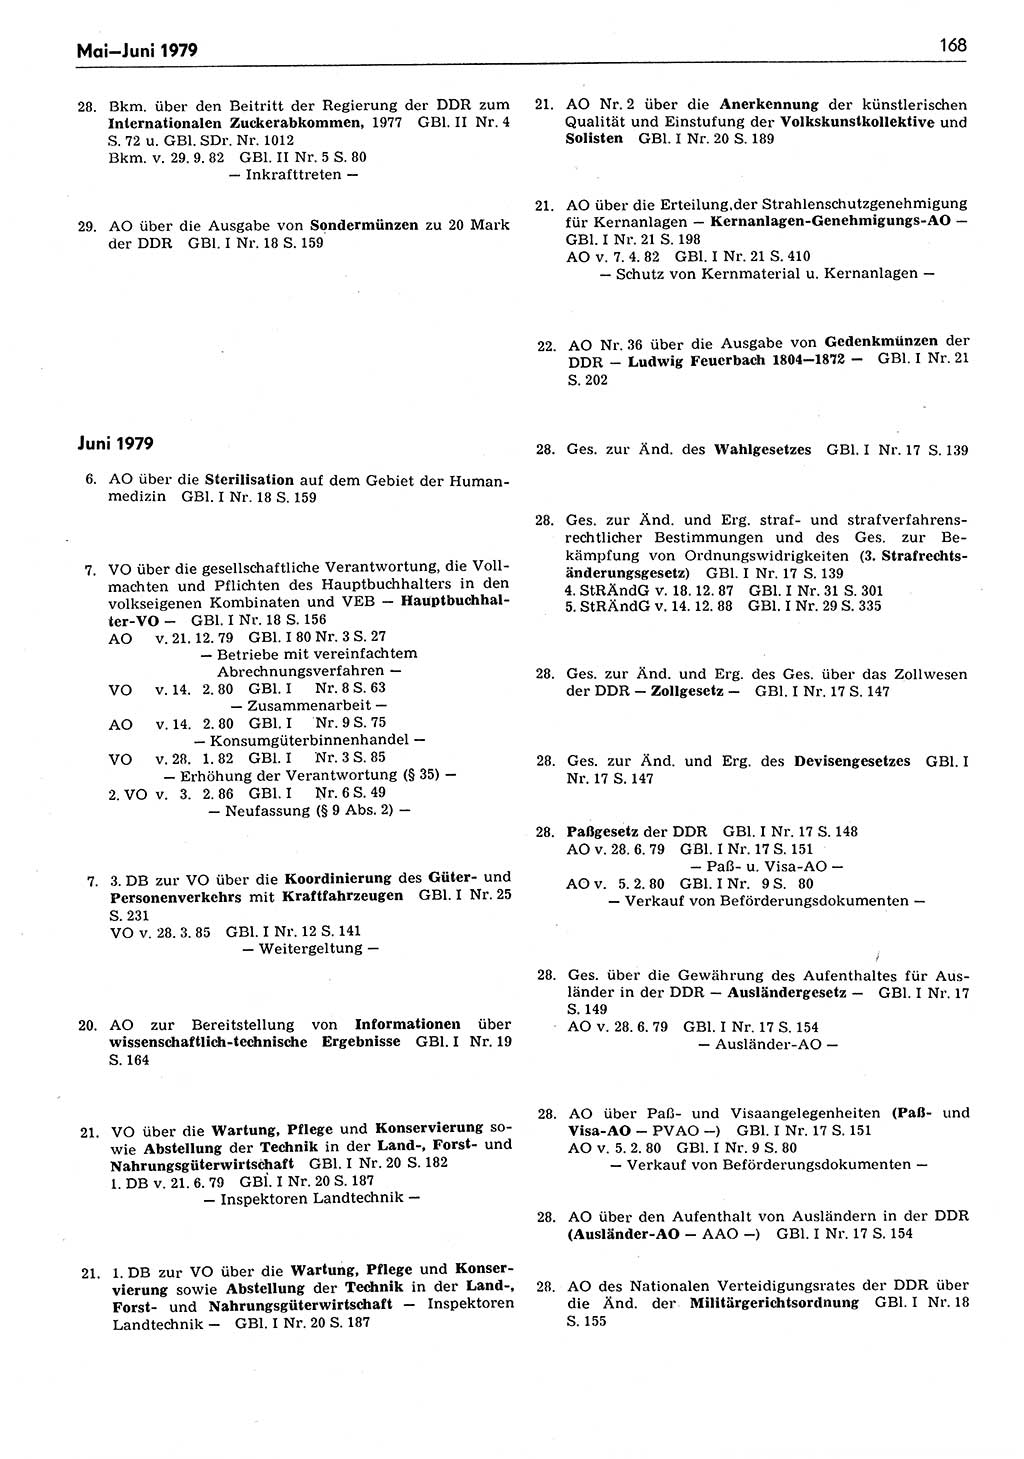 Das geltende Recht der Deutschen Demokratischen Republik (DDR) 1949-1988, Seite 168 (Gelt. R. DDR 1949-1988, S. 168)